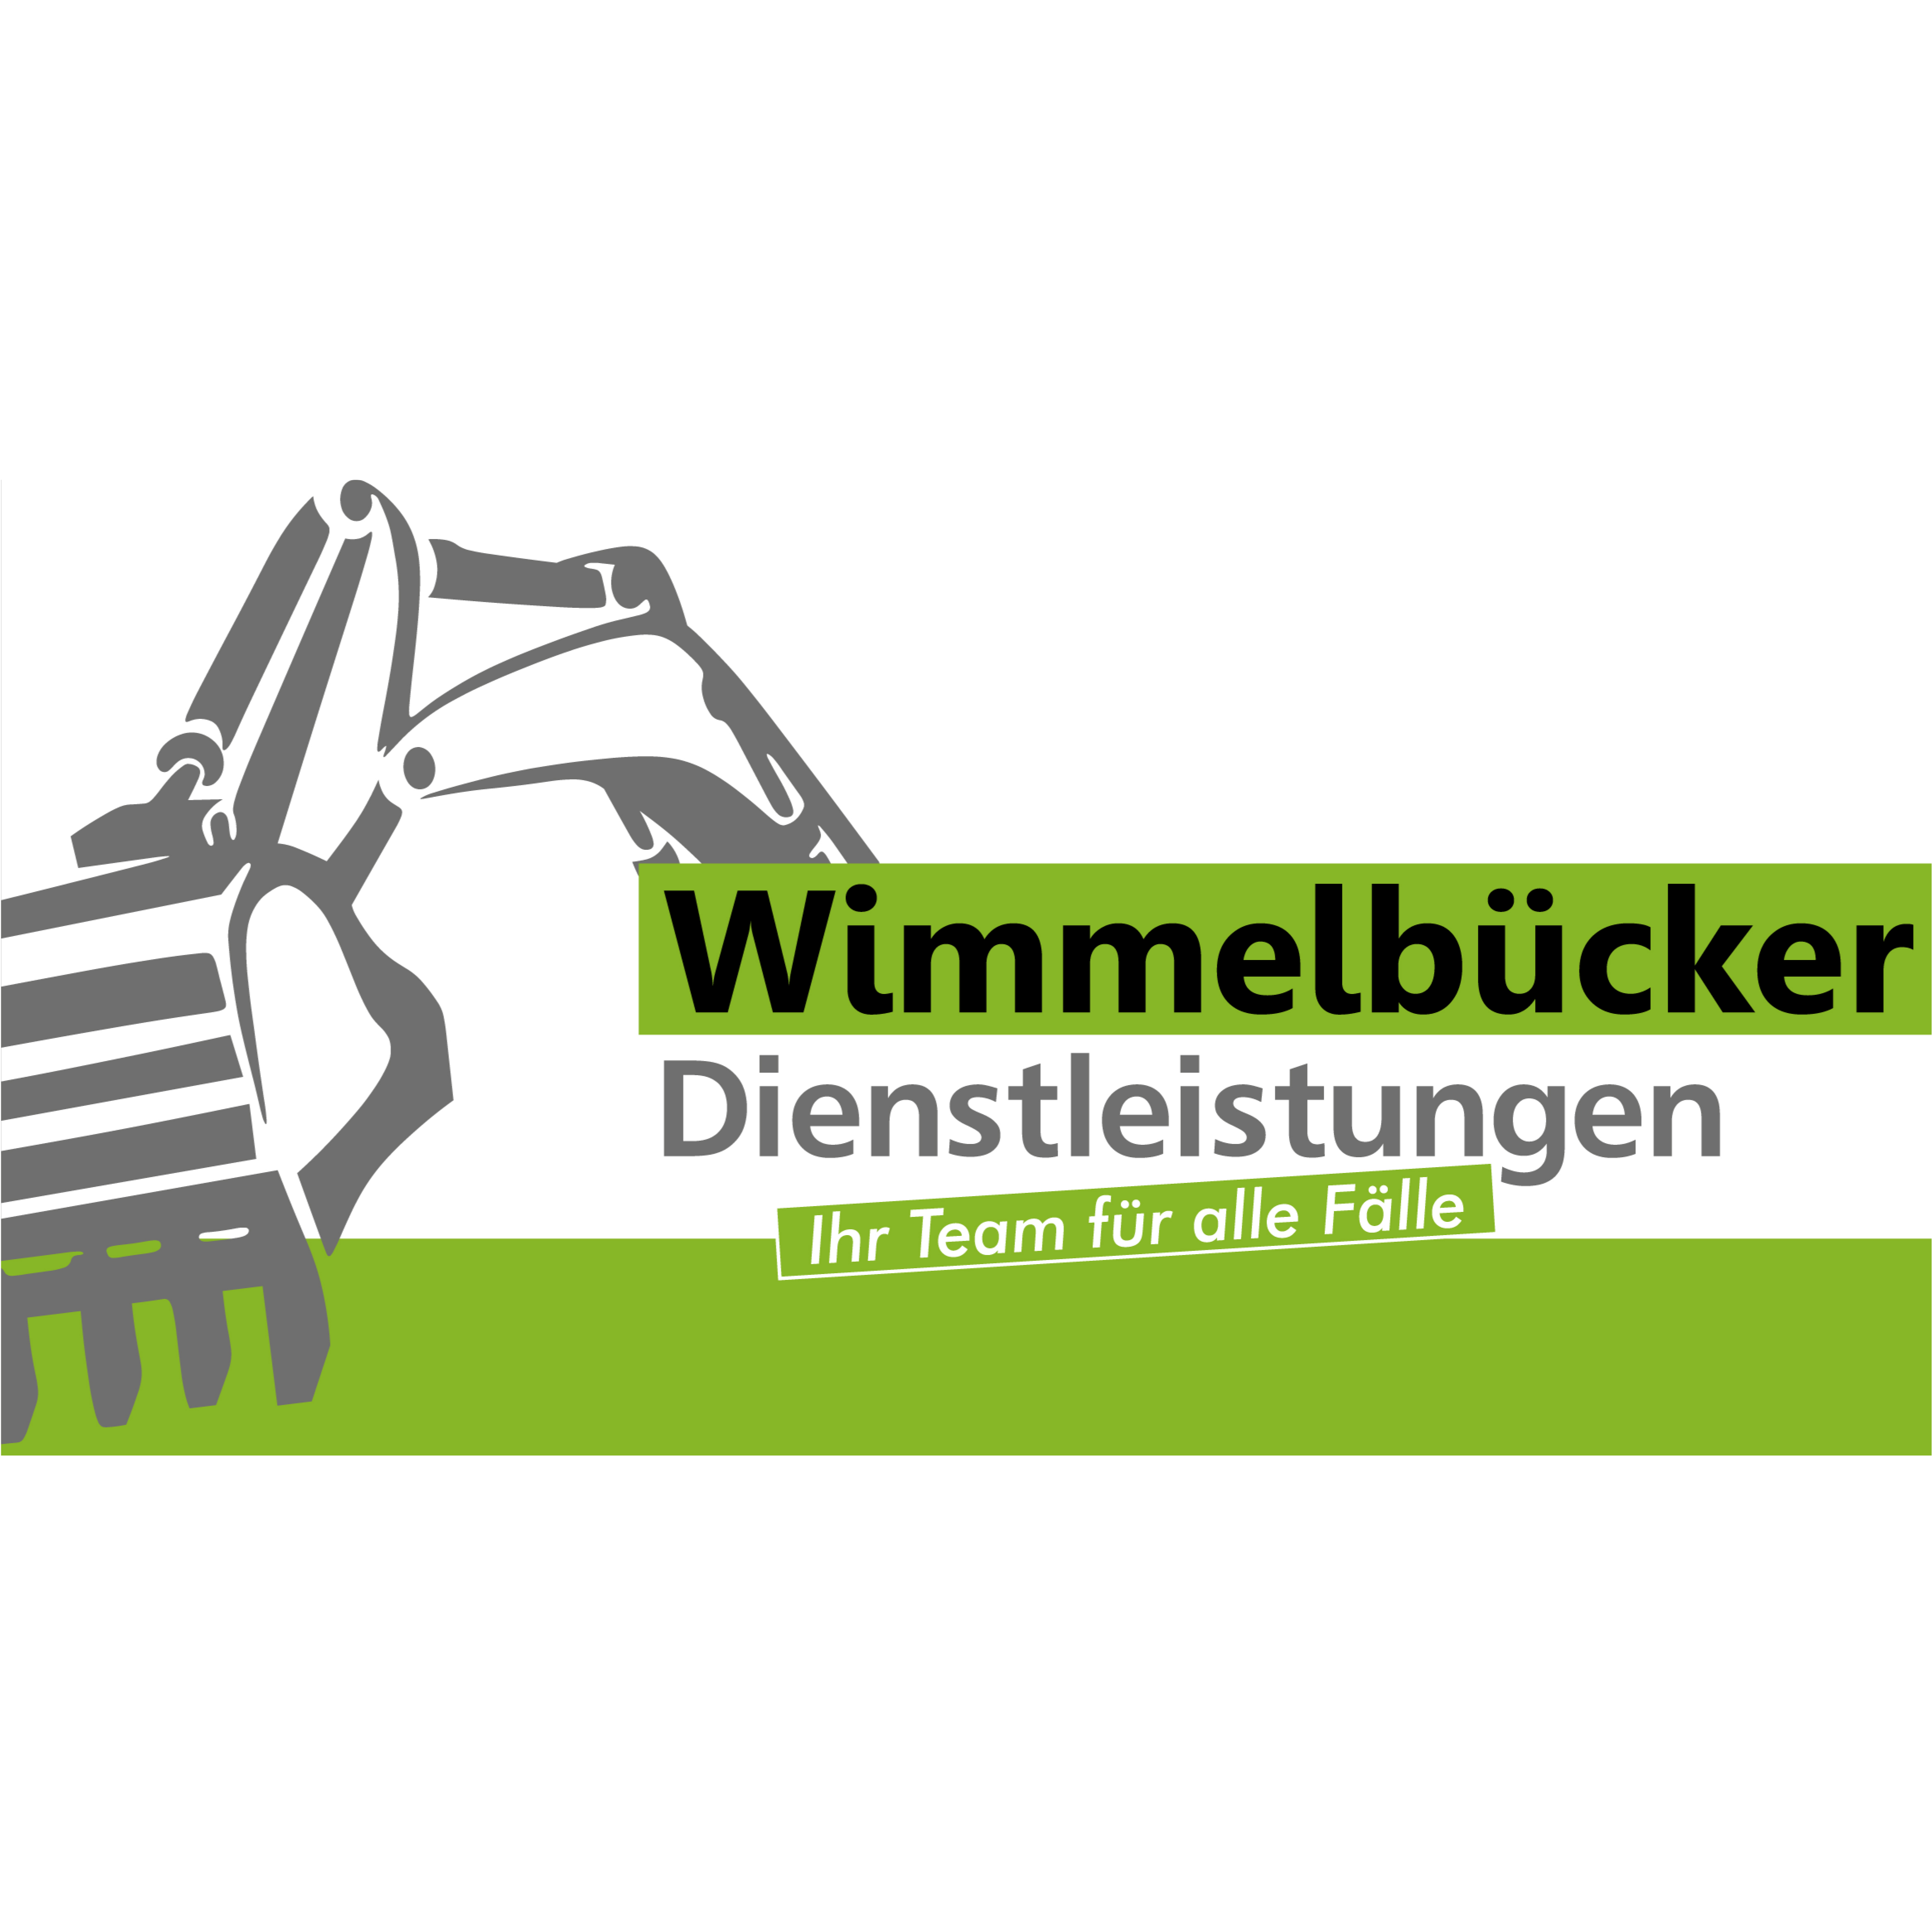 Wimmelbücker Dienstleistungen in Rheda Wiedenbrück - Logo